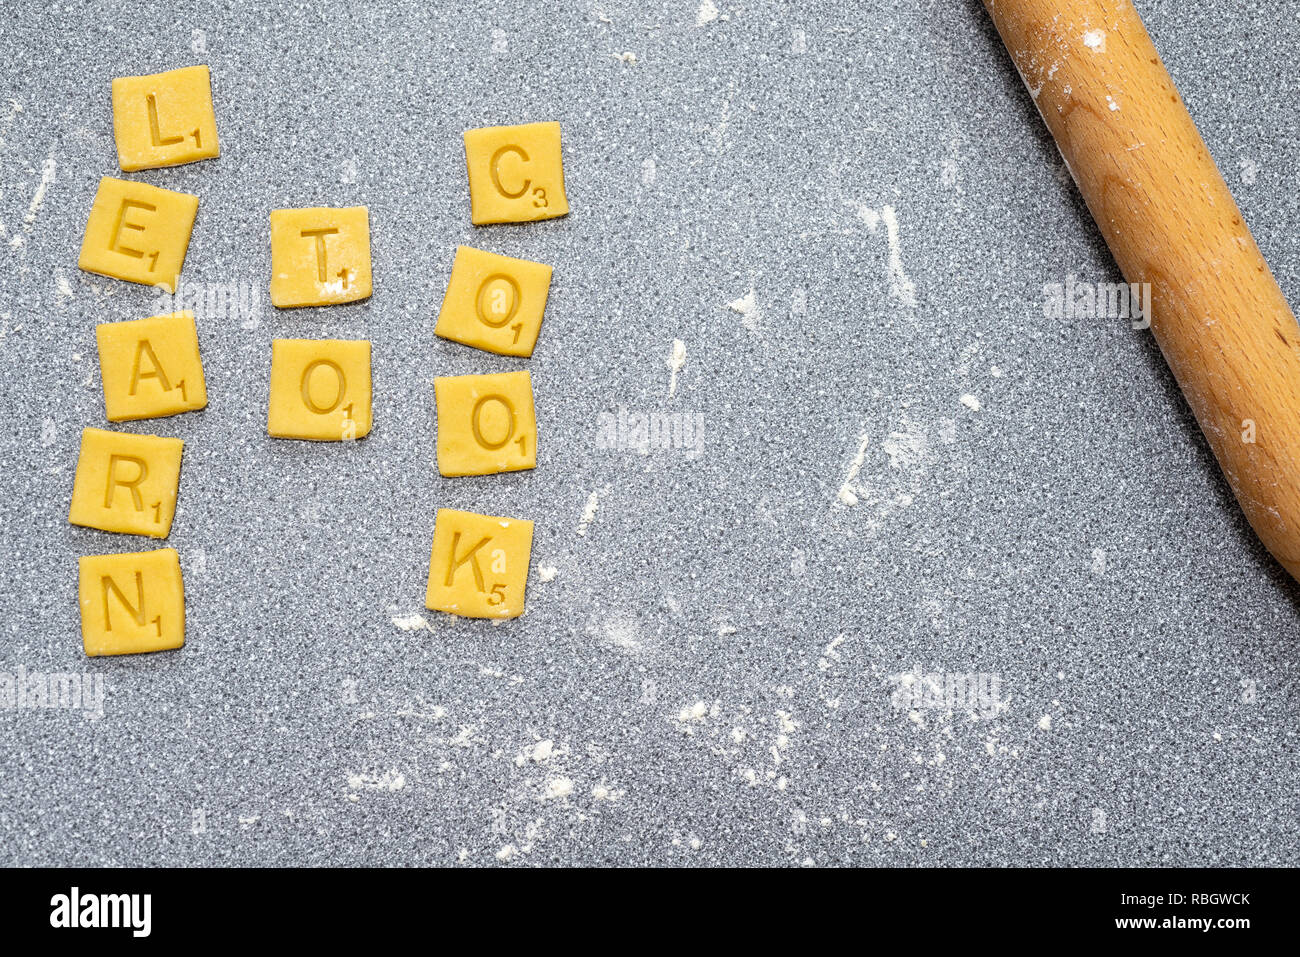 Lernen, zu kochen - scrabble Worte von Keks/Plätzchenteig. Stockfoto